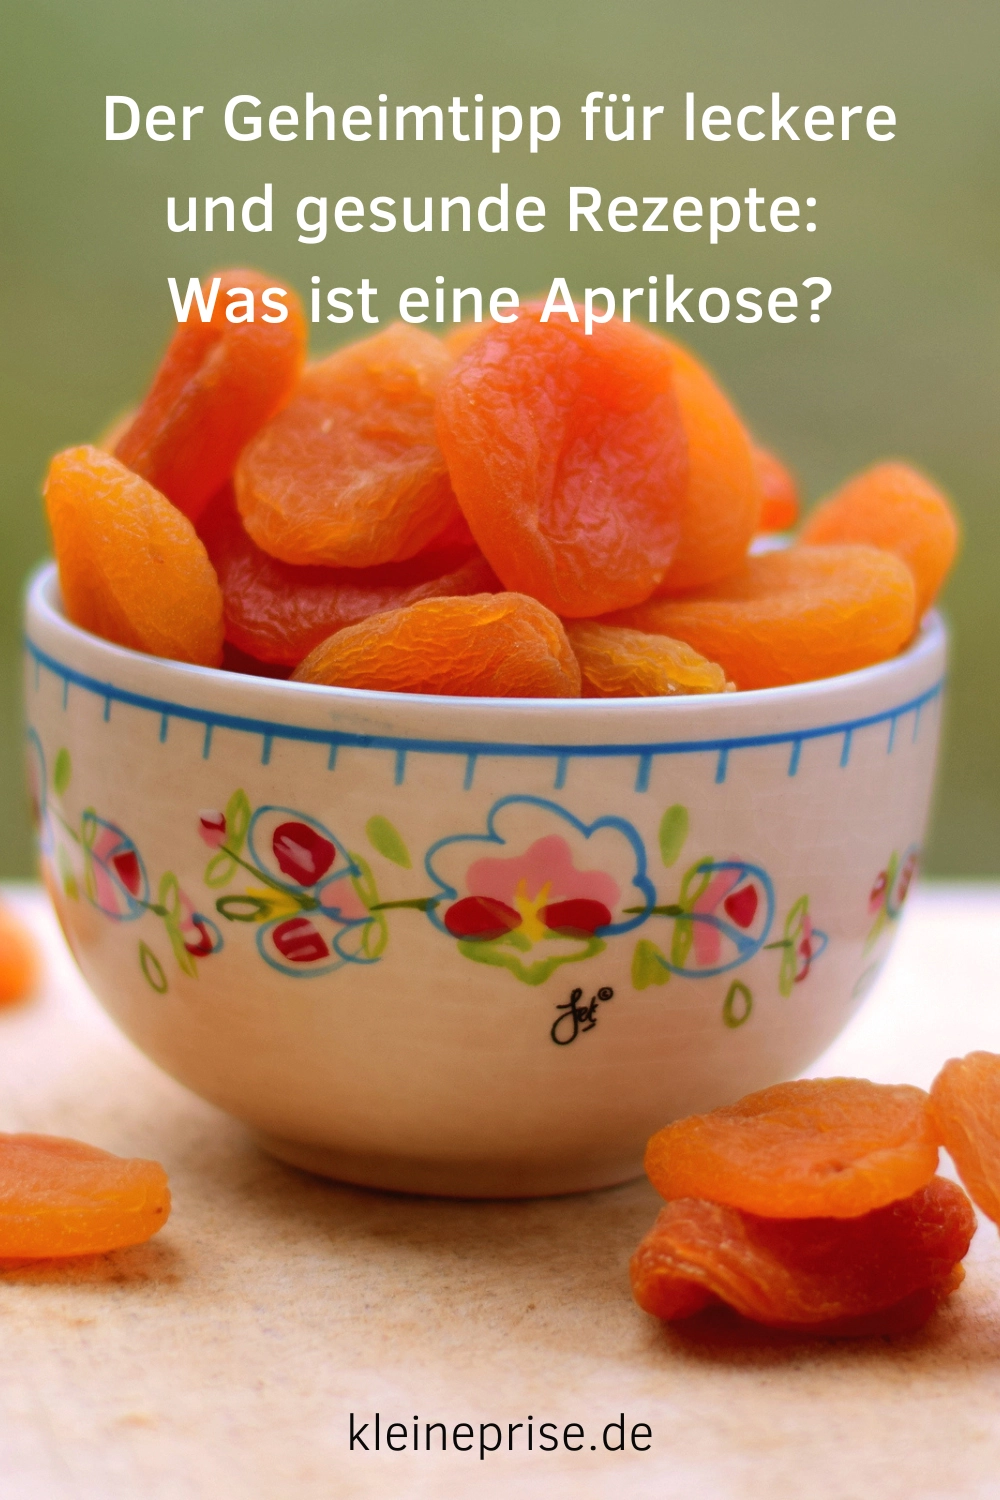 Pin es bei Pinterest: Was ist eine Aprikose?